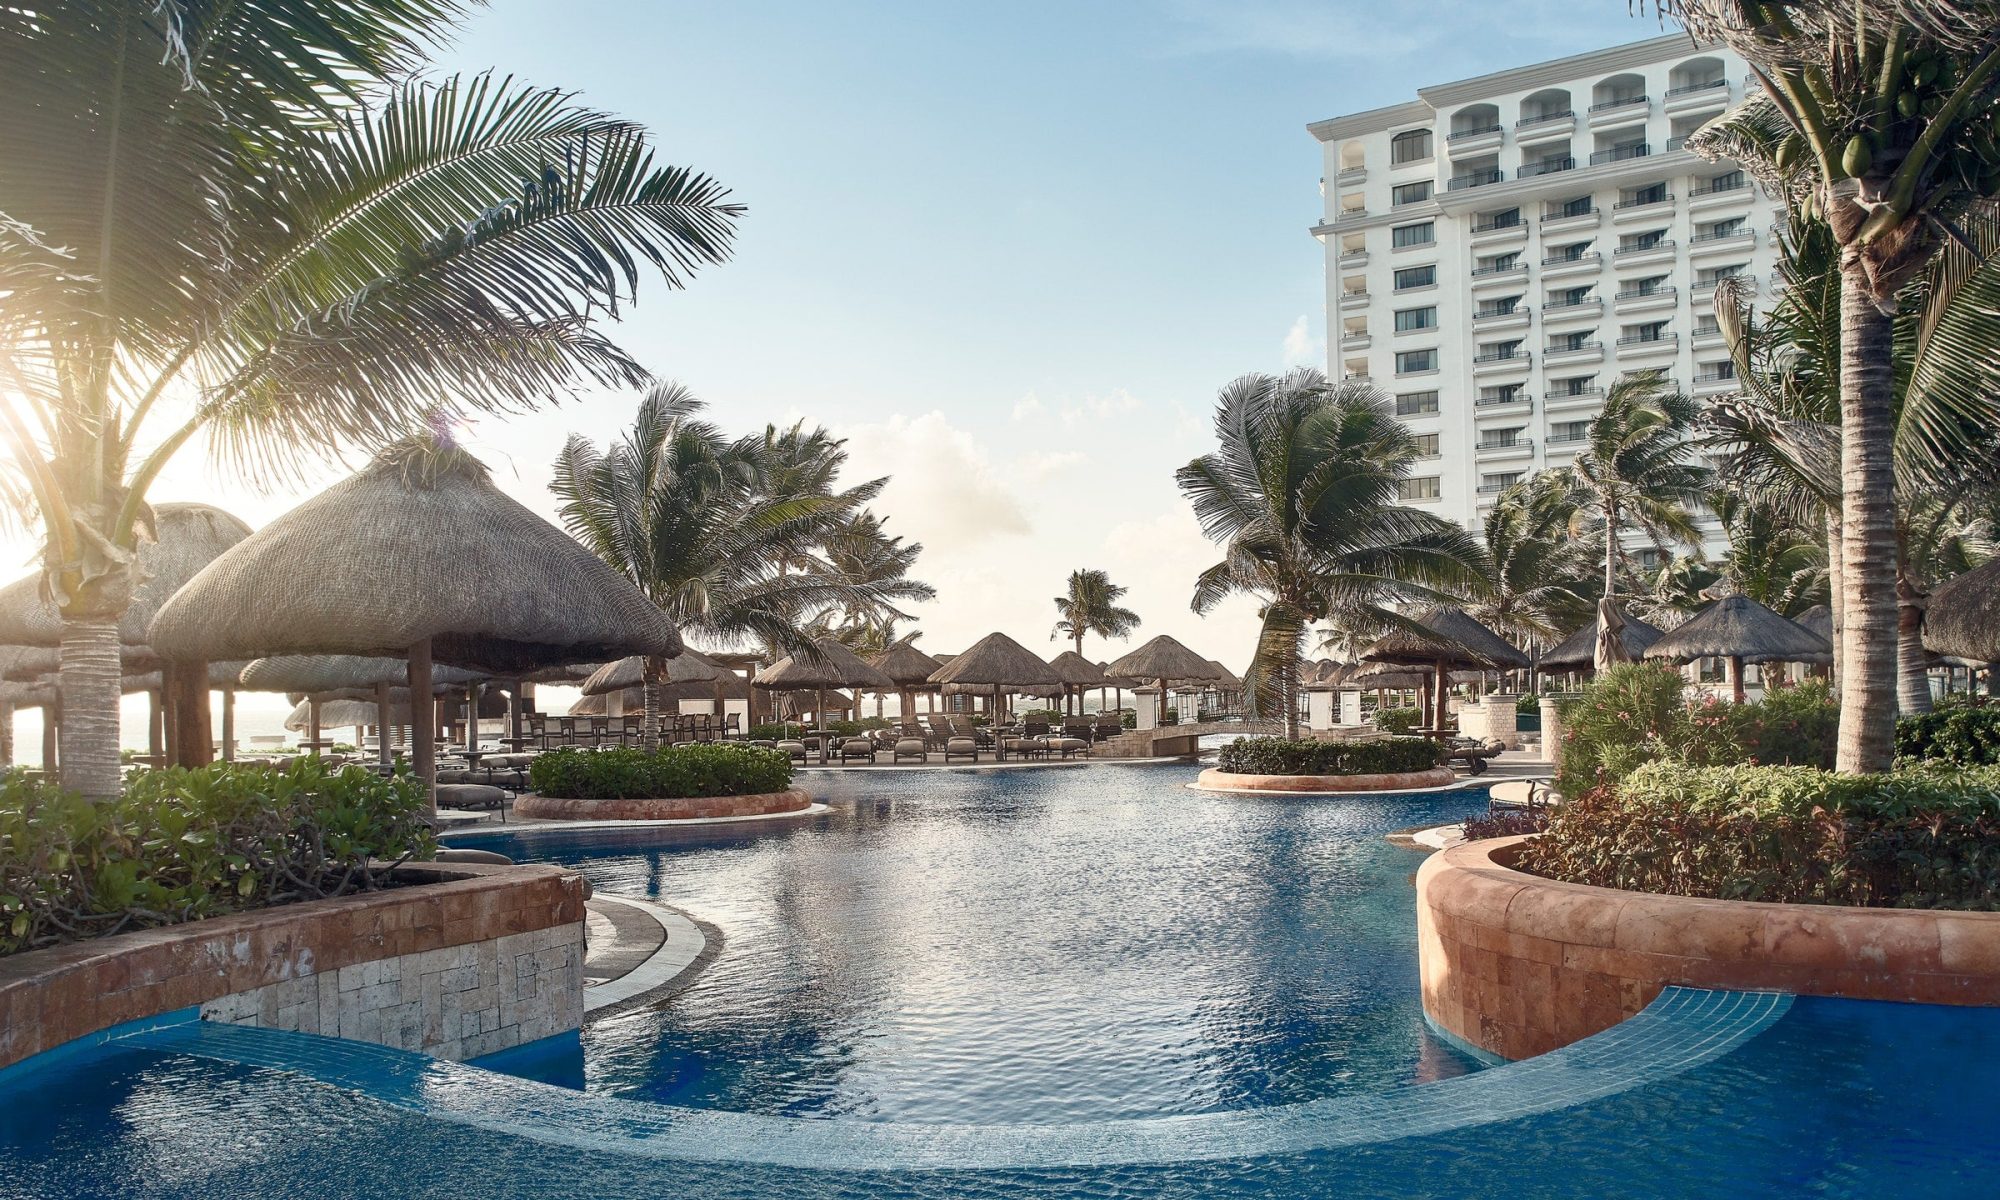 JW-Marriott-Cancun-Resort-Spa-min.jpg